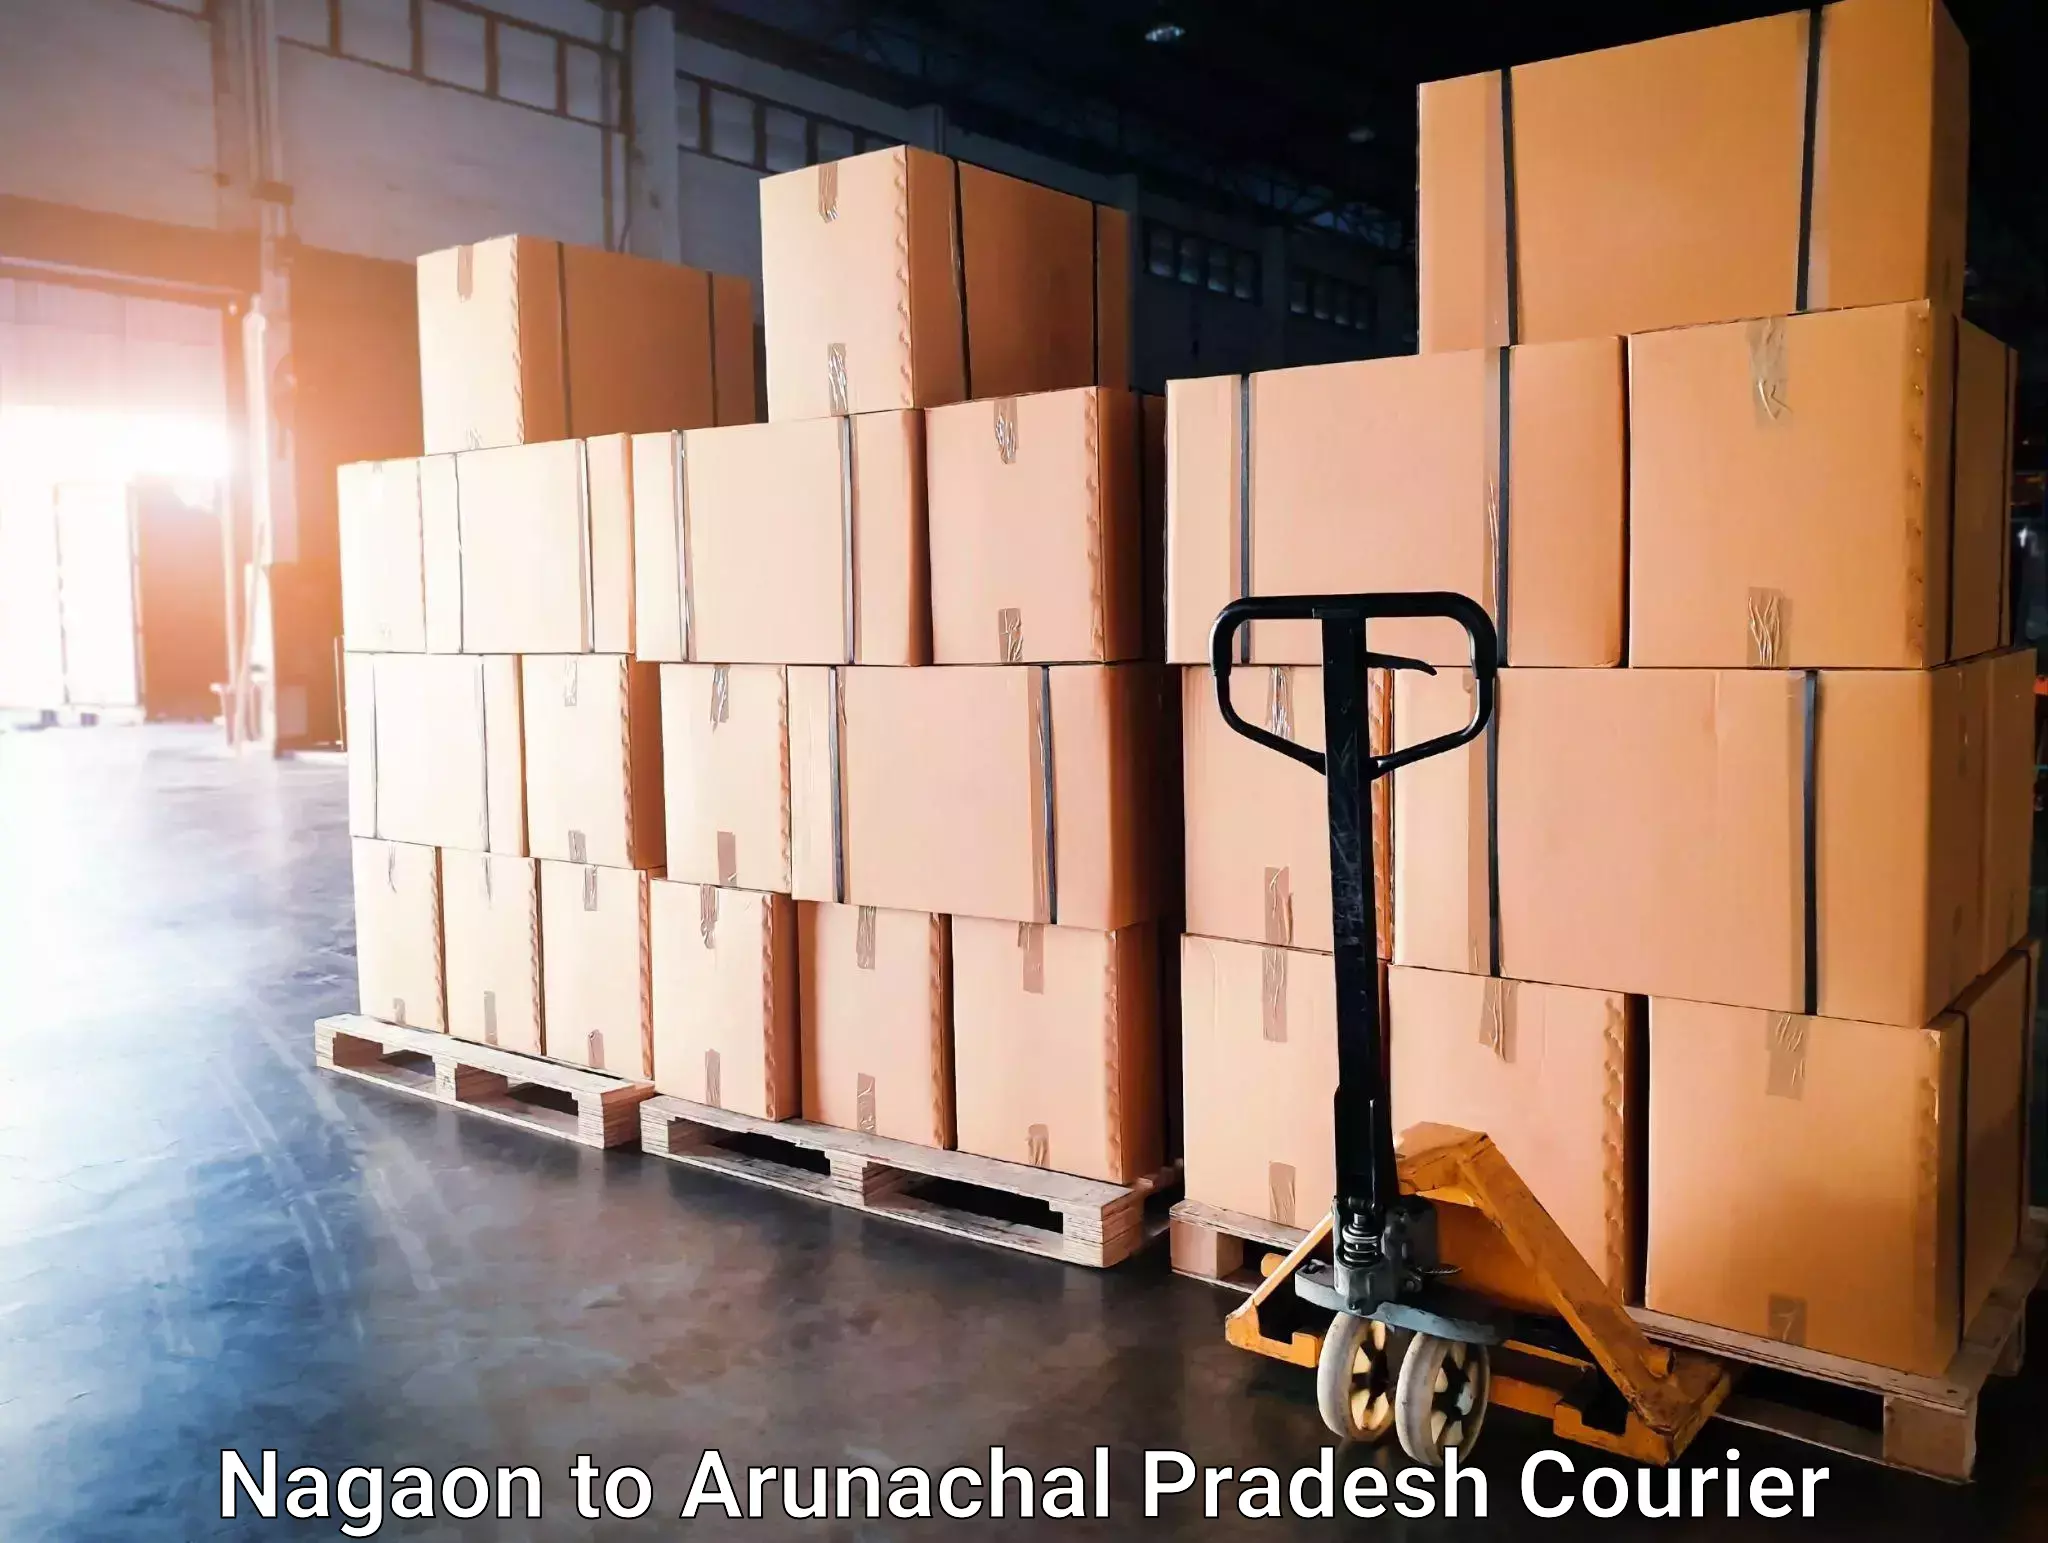 Holiday shipping services Nagaon to Arunachal Pradesh